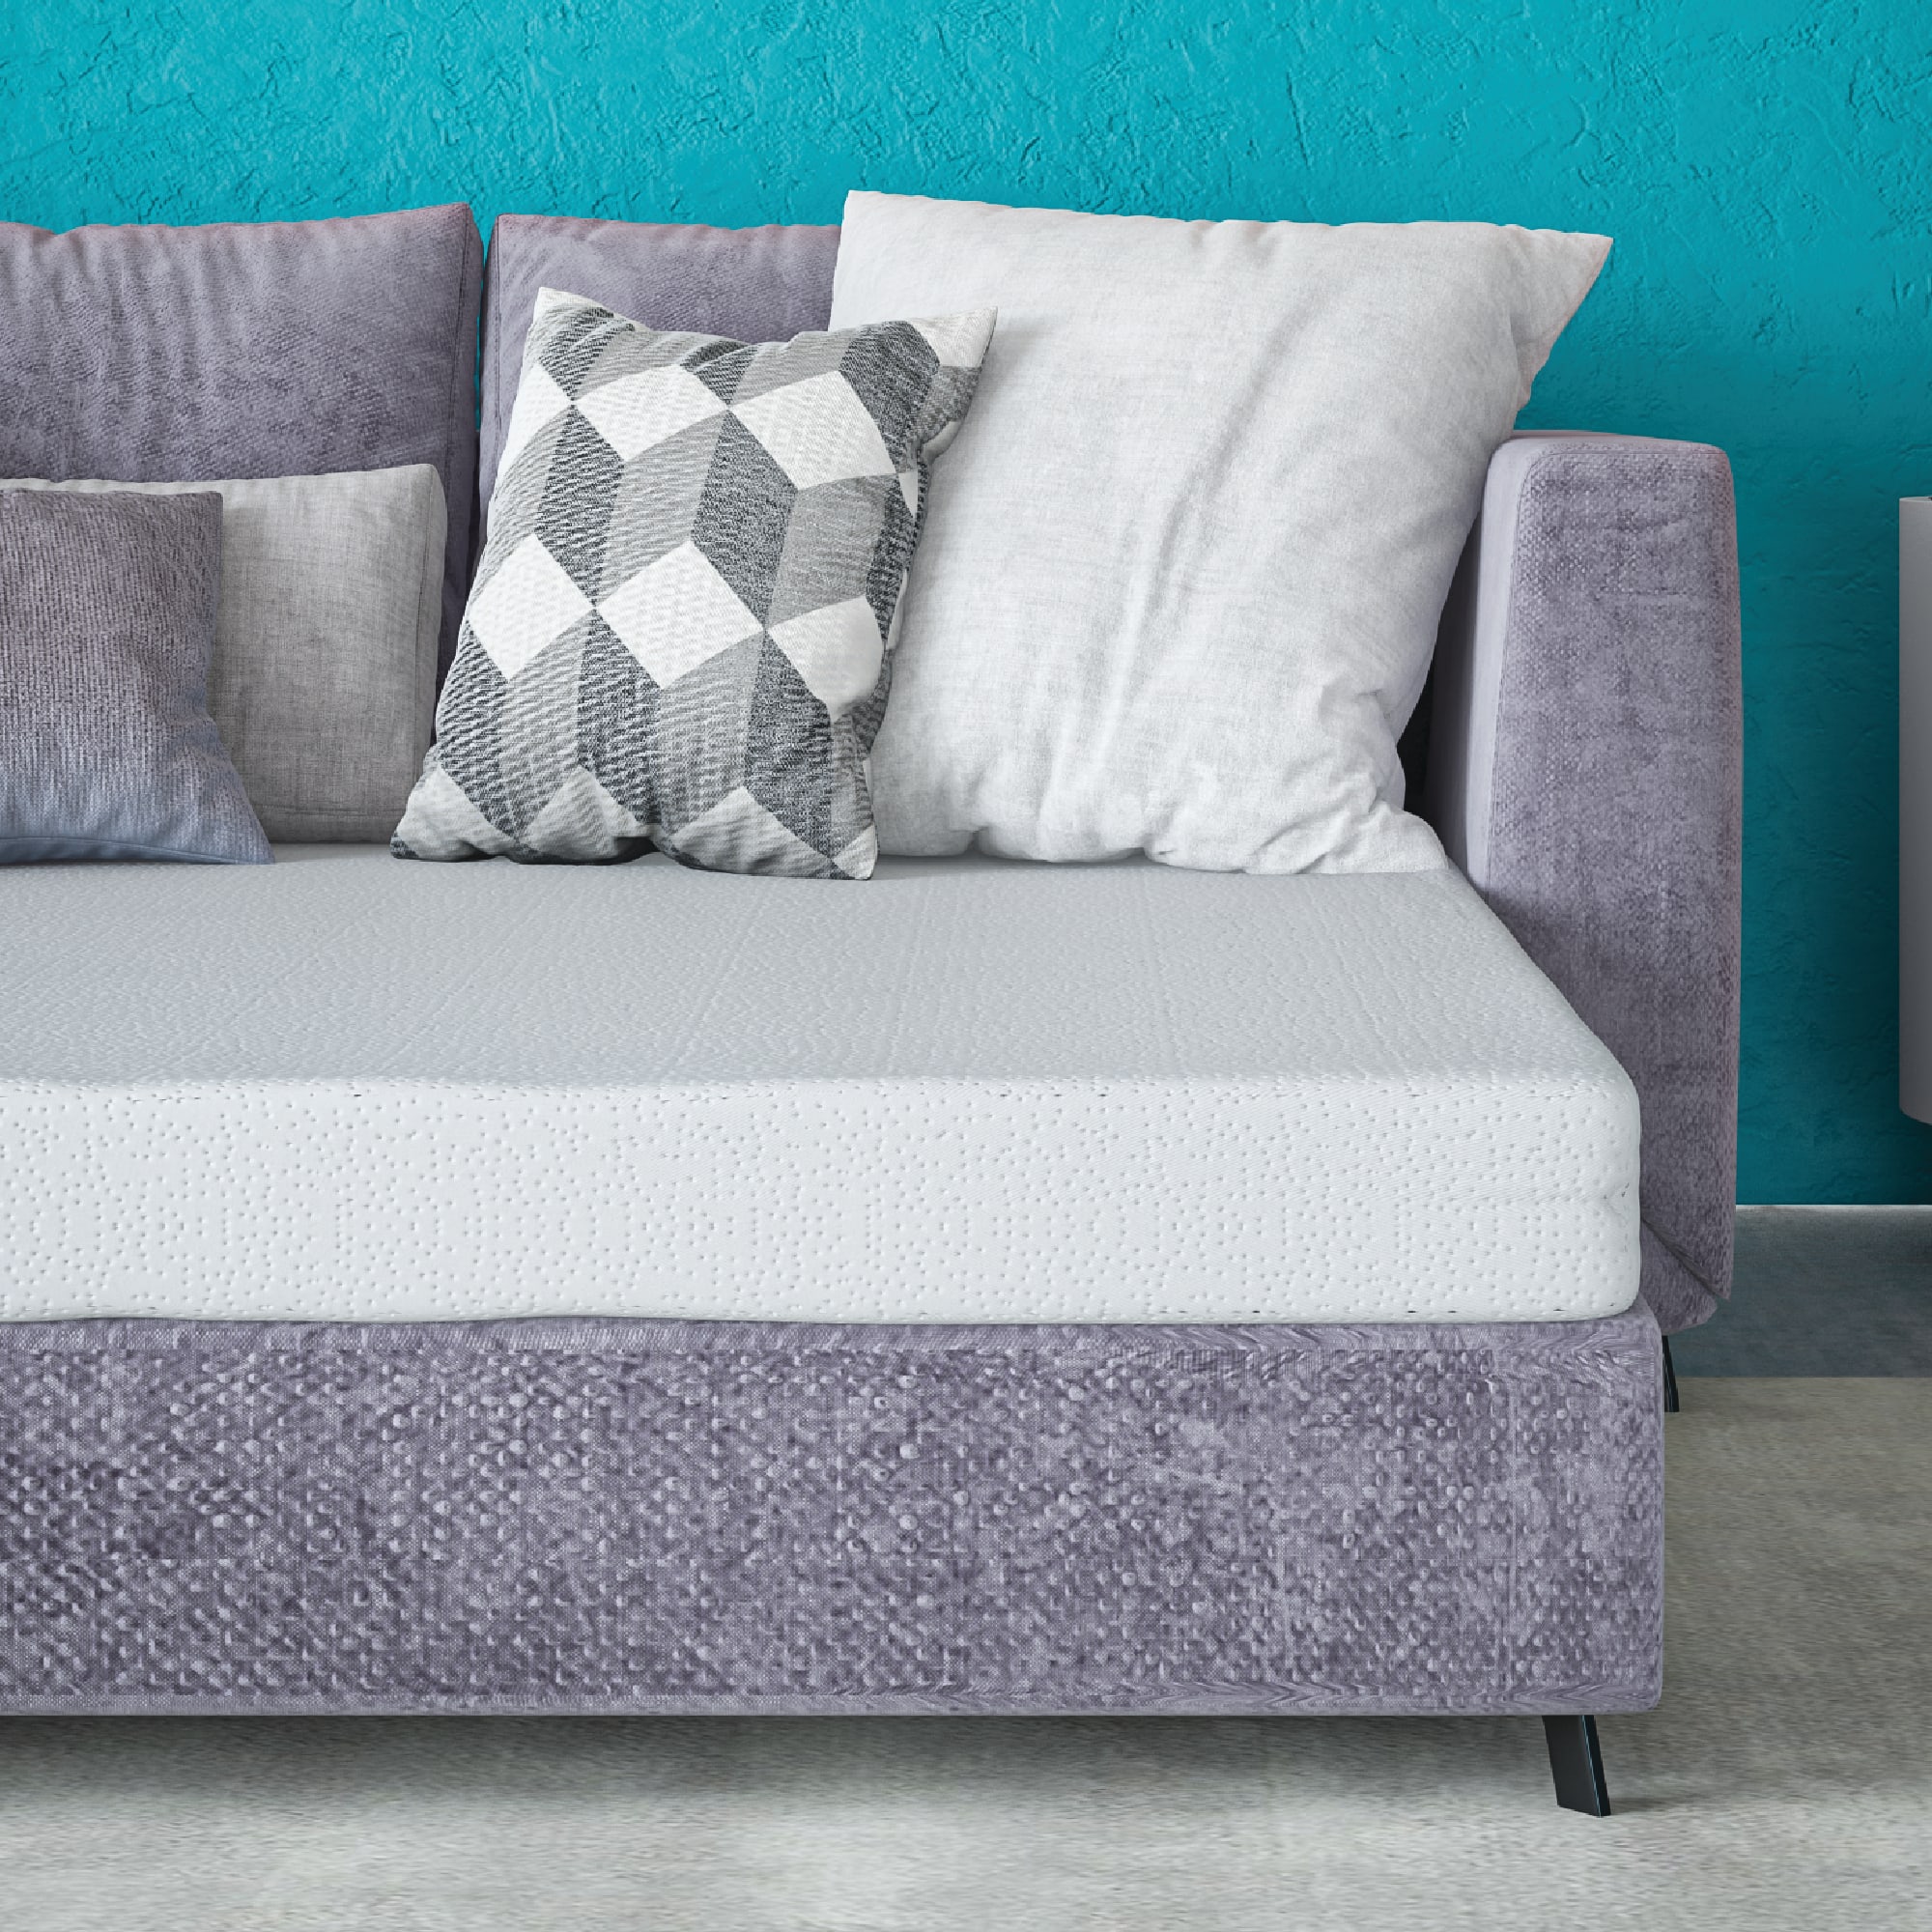 Cool Gel 4" Memory Foam Replacement Sleep Sofa Bed Mattress, Queen - image 1 of 13